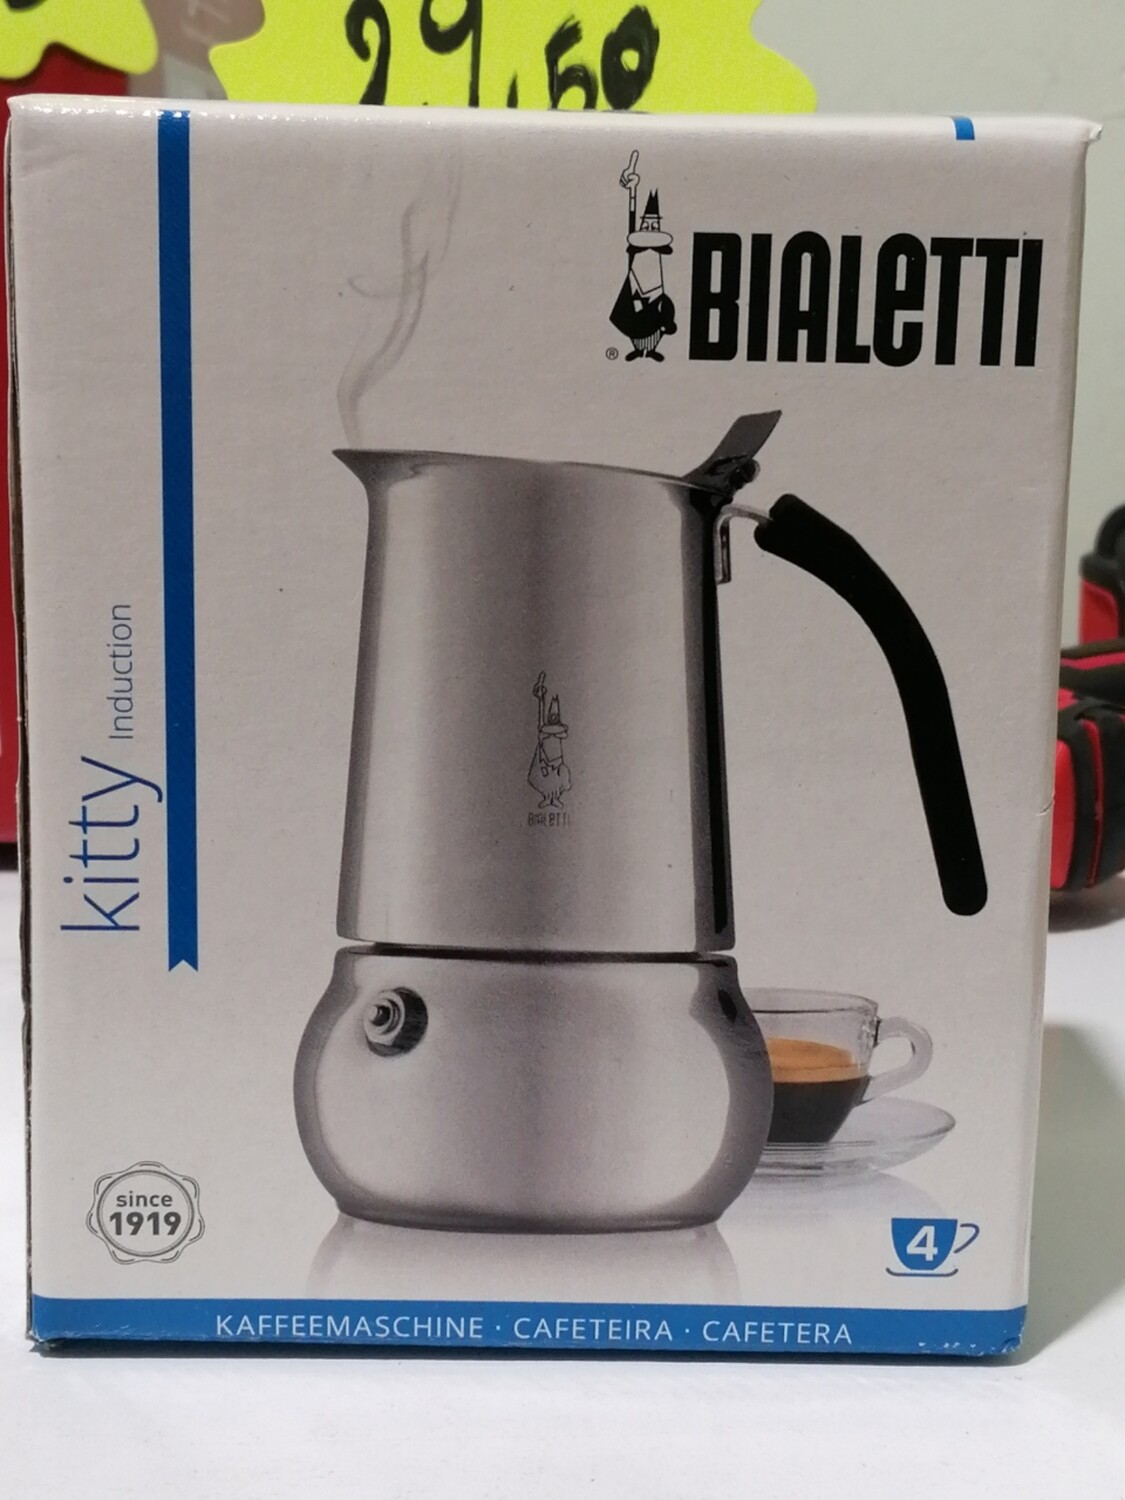 Bialetti Industrie Divina caffettiera moka espresso 4 tazze